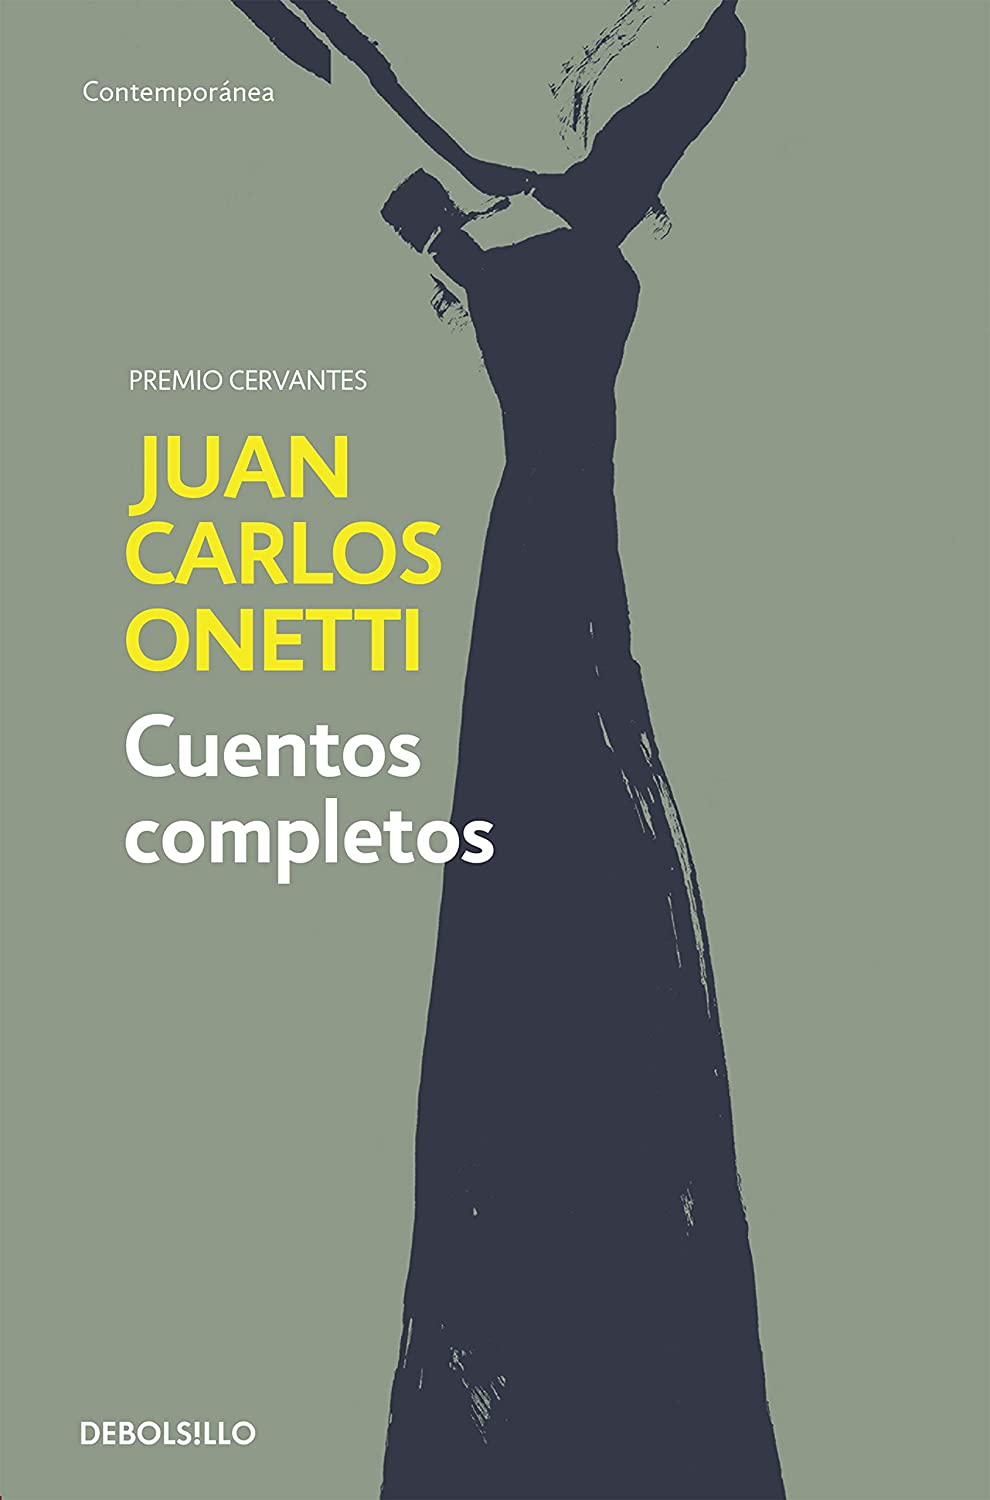 Cuentos completos. Juan Carlos Onetti / Complete Works. Juan Carlos Onetti (Contempor&aacute;nea) (Spanish Edition)